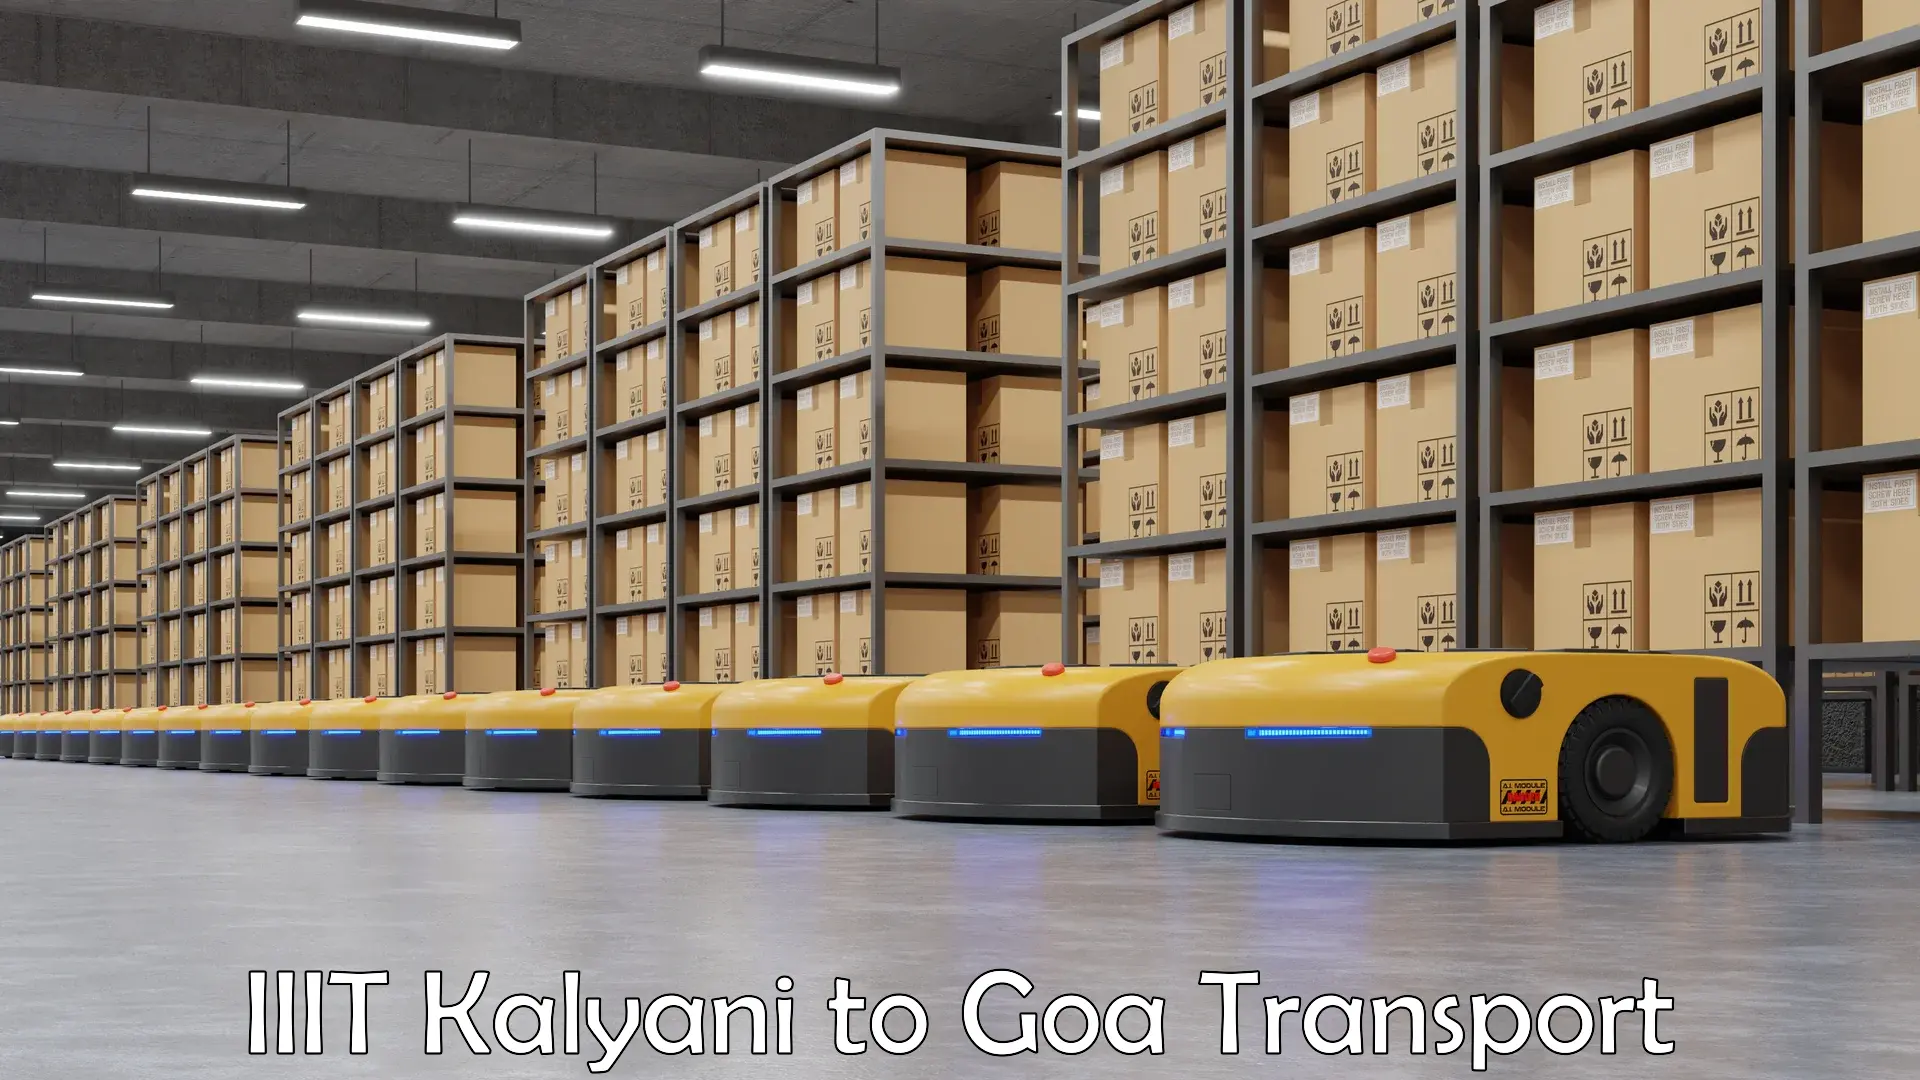 Daily transport service IIIT Kalyani to Panjim